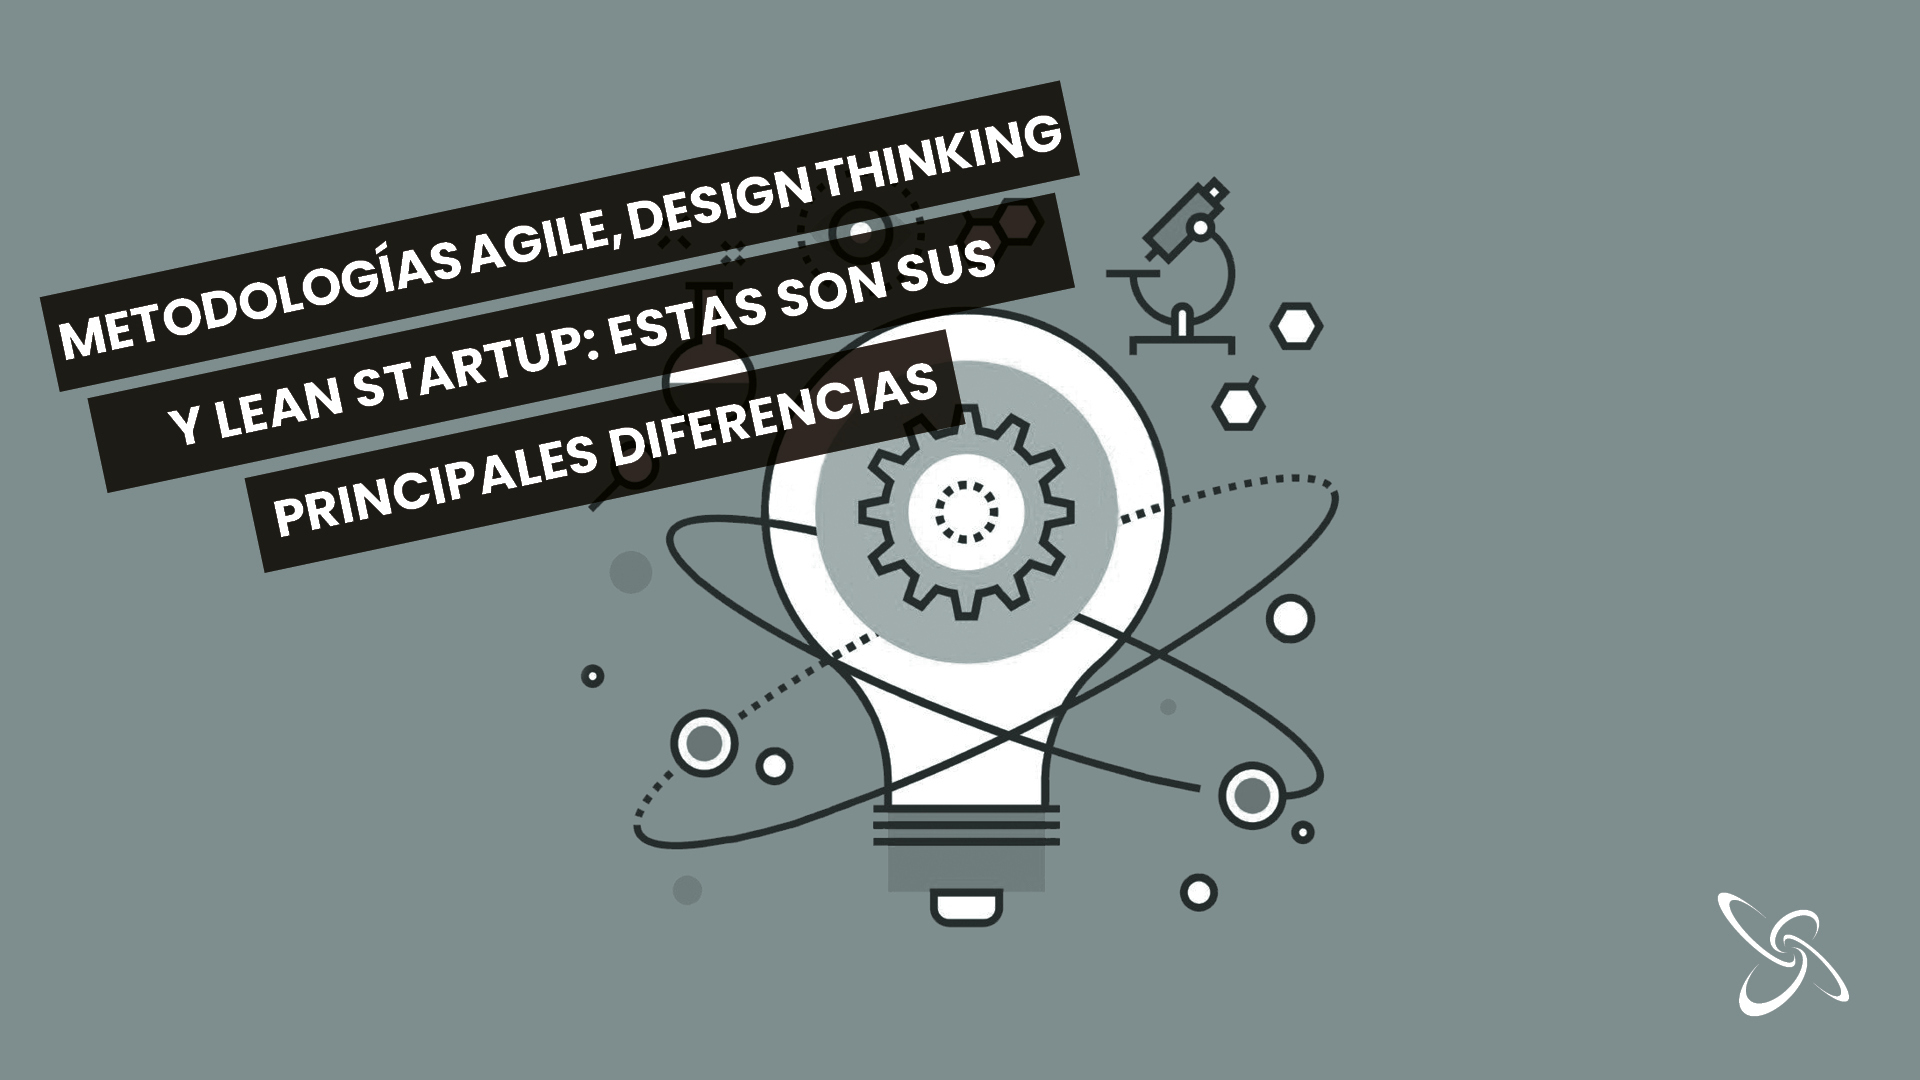 Metodologies Agile, Design Thinking i Lean Startup: aquestes són les seves principals diferències